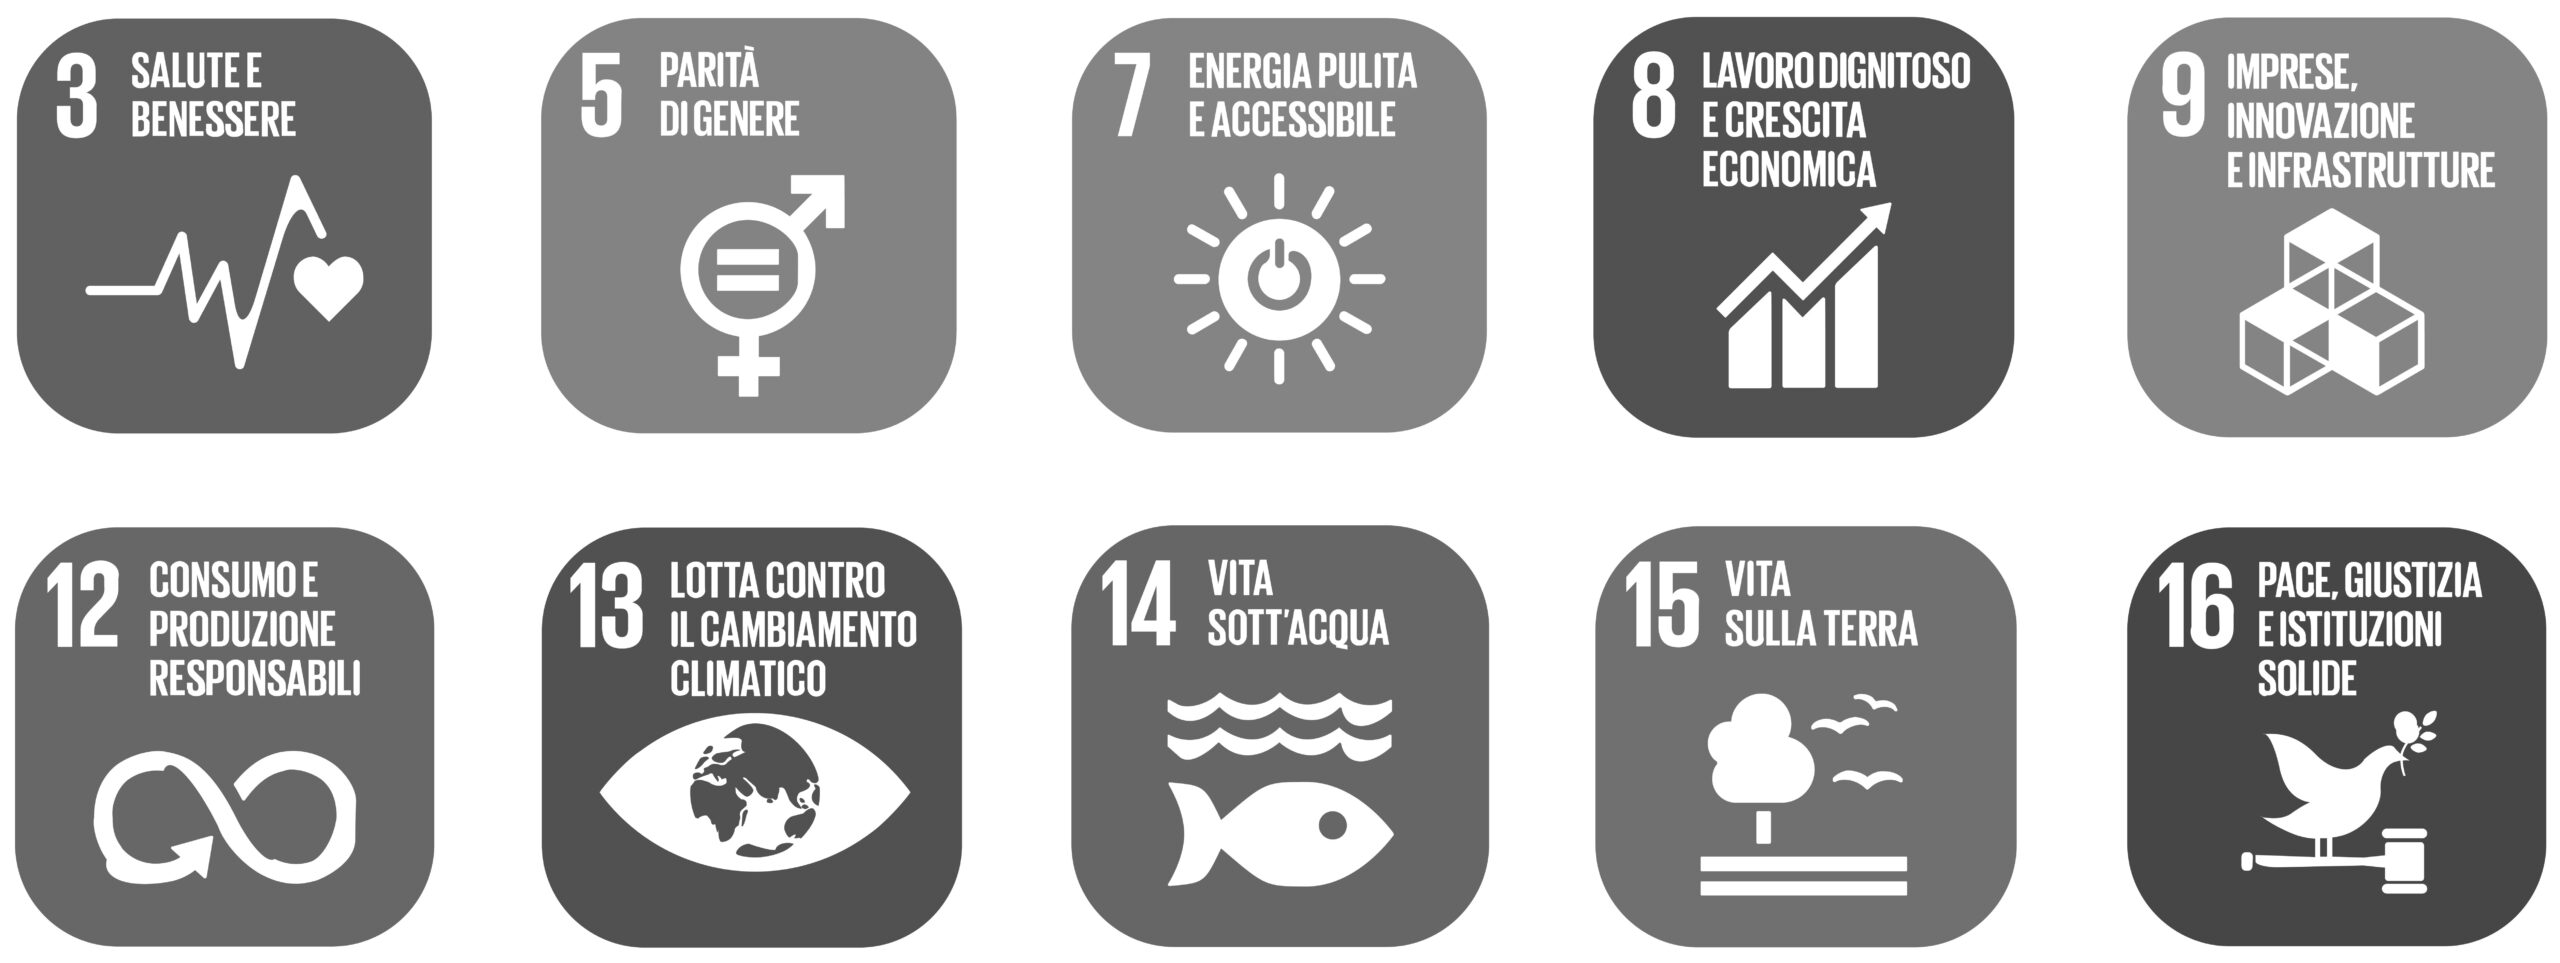 Sostenibilità-Imballi-Riciclati-Salute-Benessere-Parità-di-Genere-Lavoro-Consumi-Parquet-Legno-Resina-Resilienti-Erba-Sintetica-Obiettivi-Agenda-ONU-Chimiver-BW